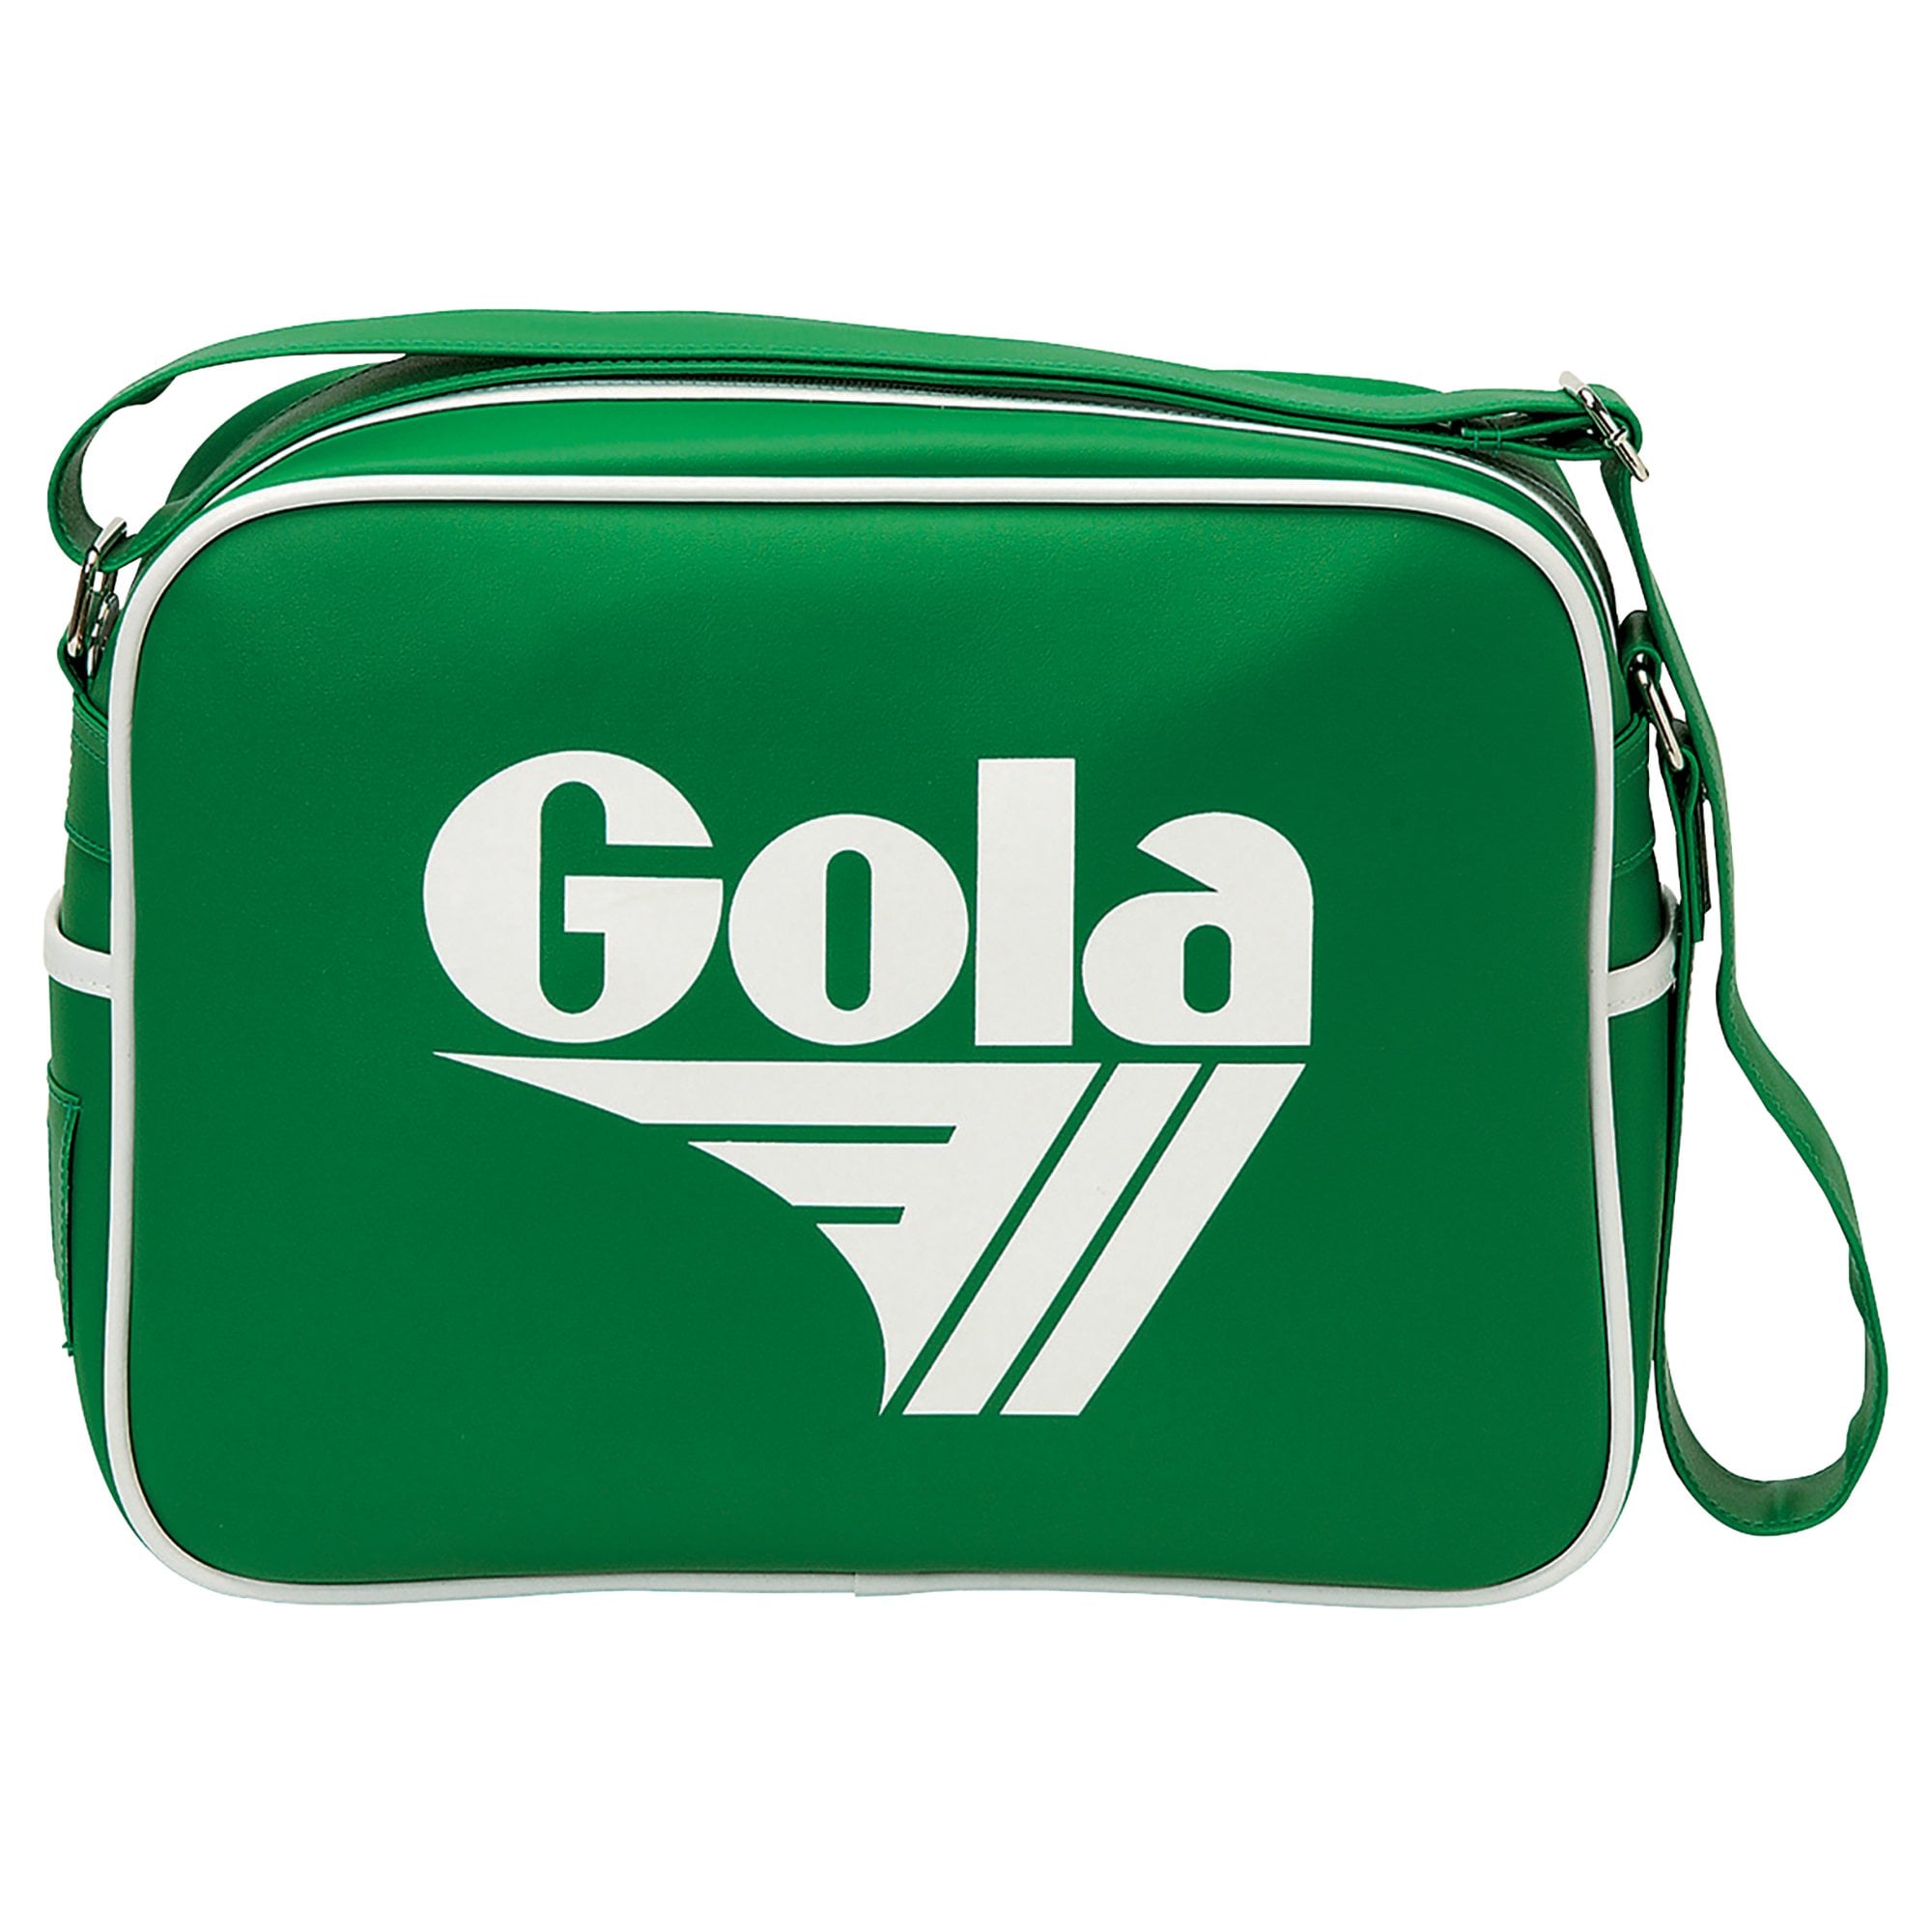 Gola: Classic Redford Retro Bag - Apple/white